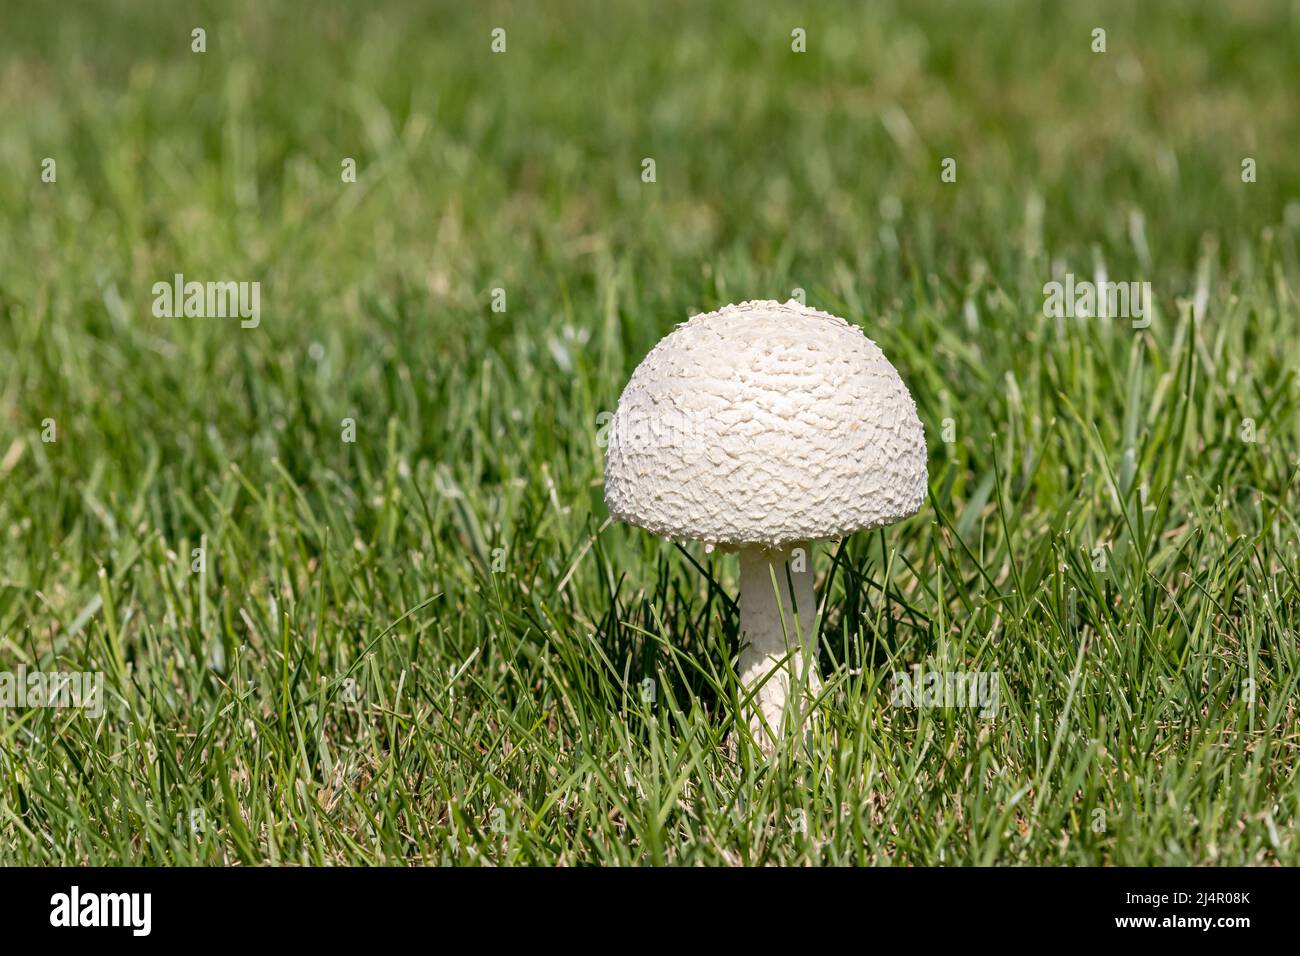 Gros plan sur le parasol blanc dans la cour. Concept d'entretien de pelouse, d'aménagement paysager et de champignons toxiques Banque D'Images